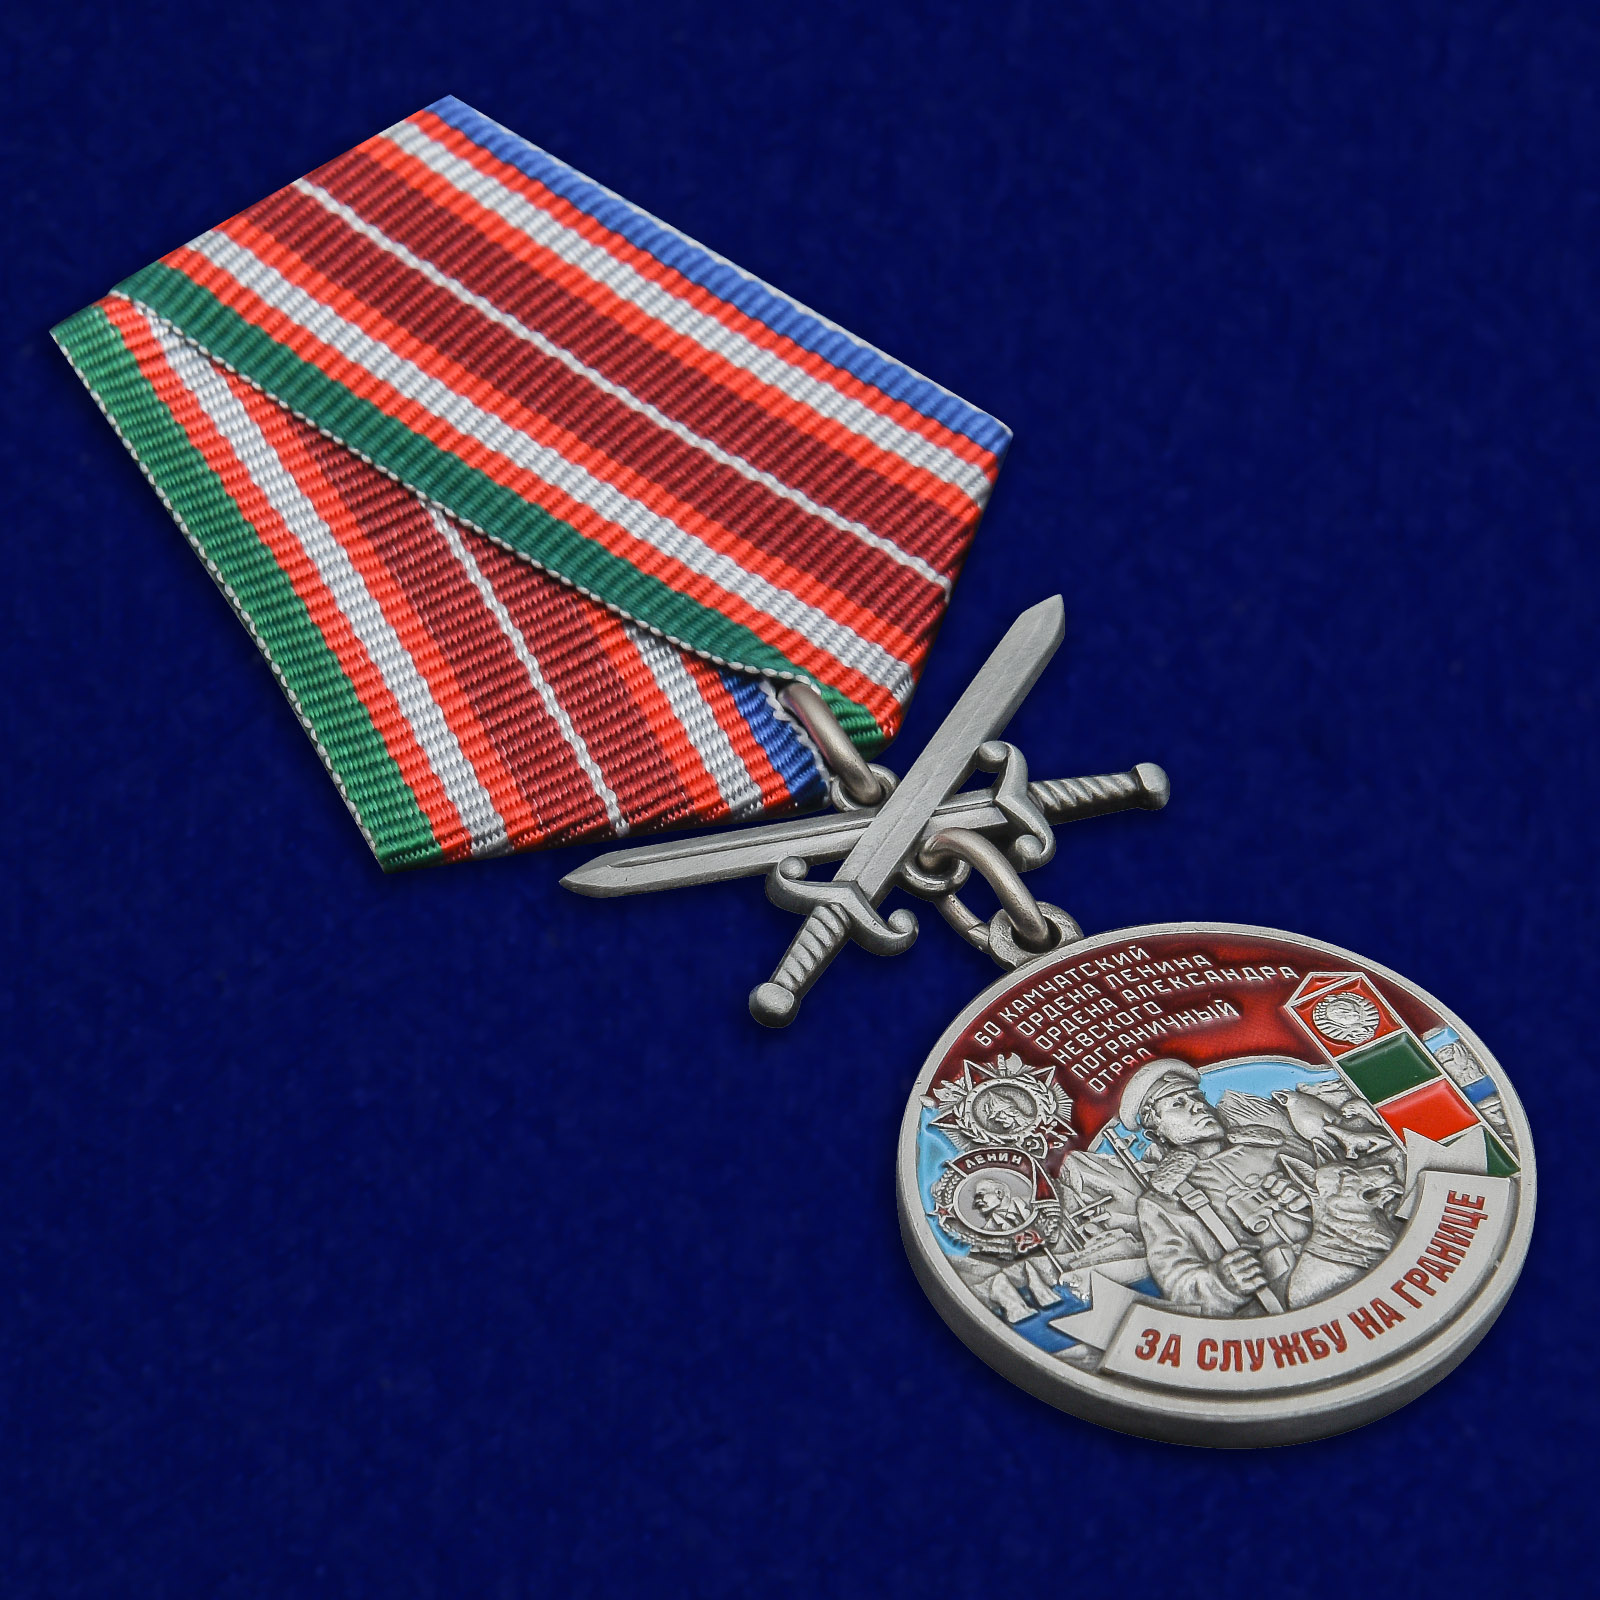 Купить медаль "За службу на границе" (60 Камчатский ПогО)